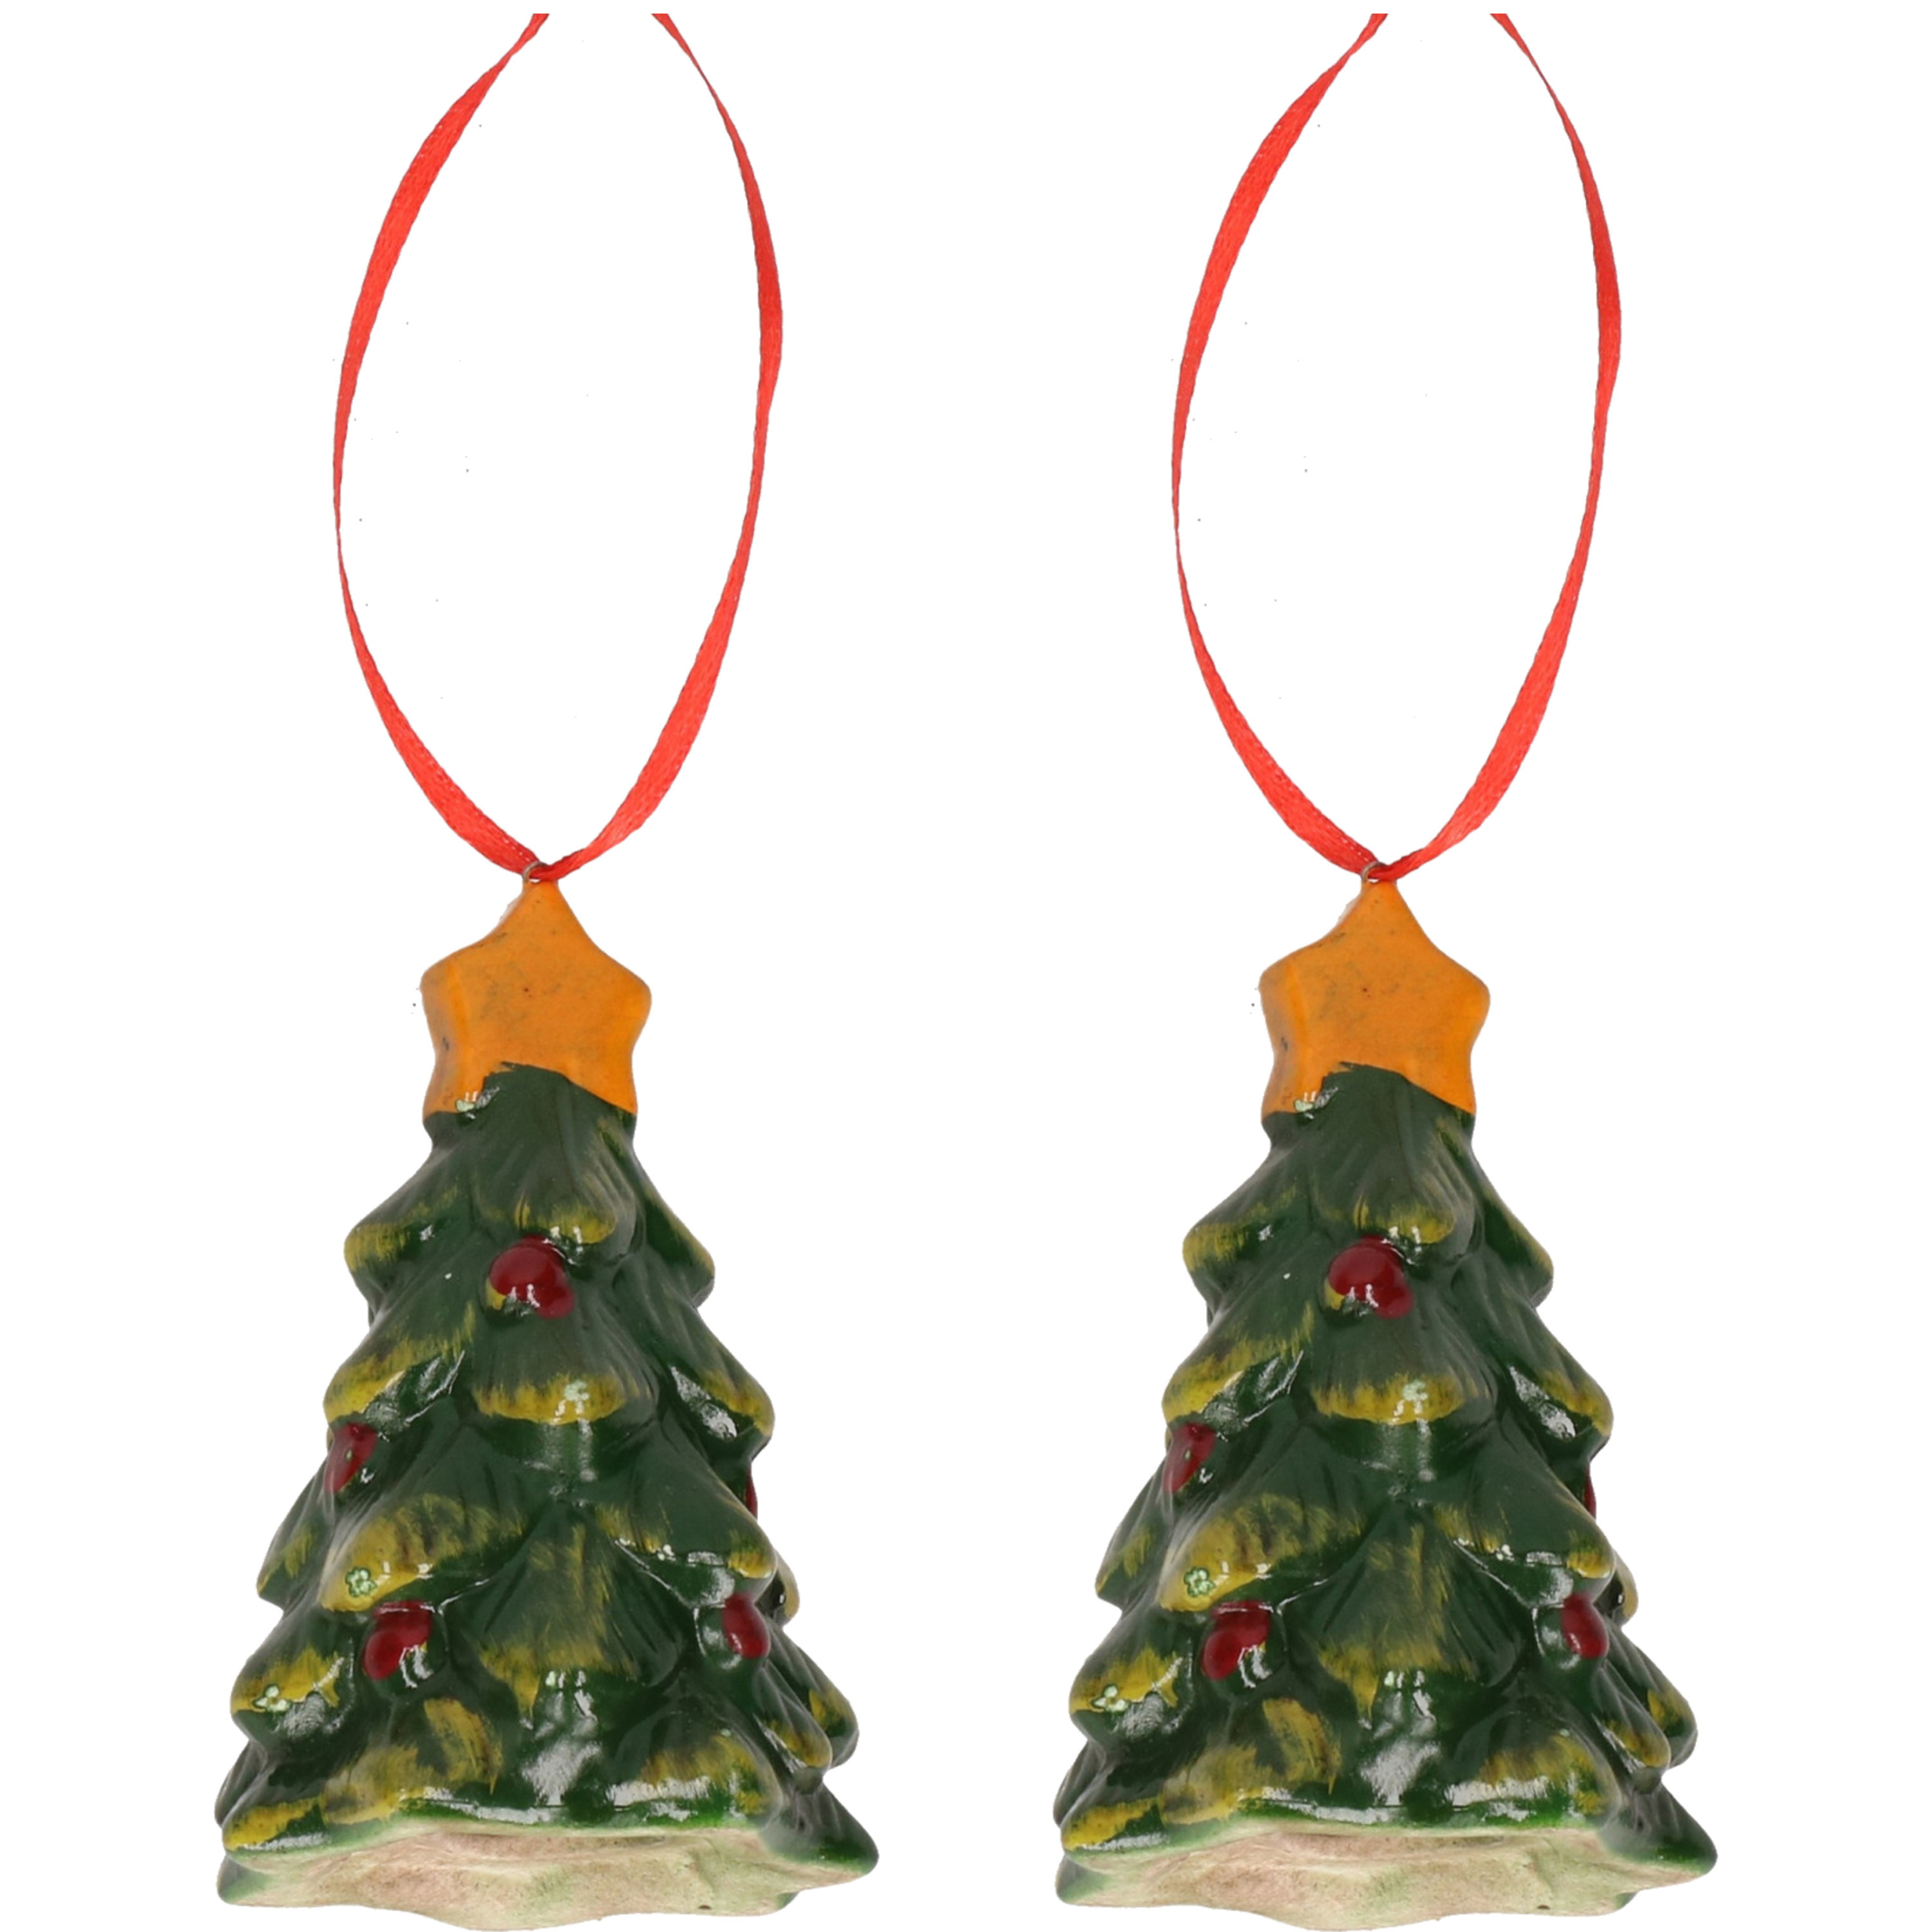 2x Kersthangers kerstboompjes 8 cm kerstboomversiering